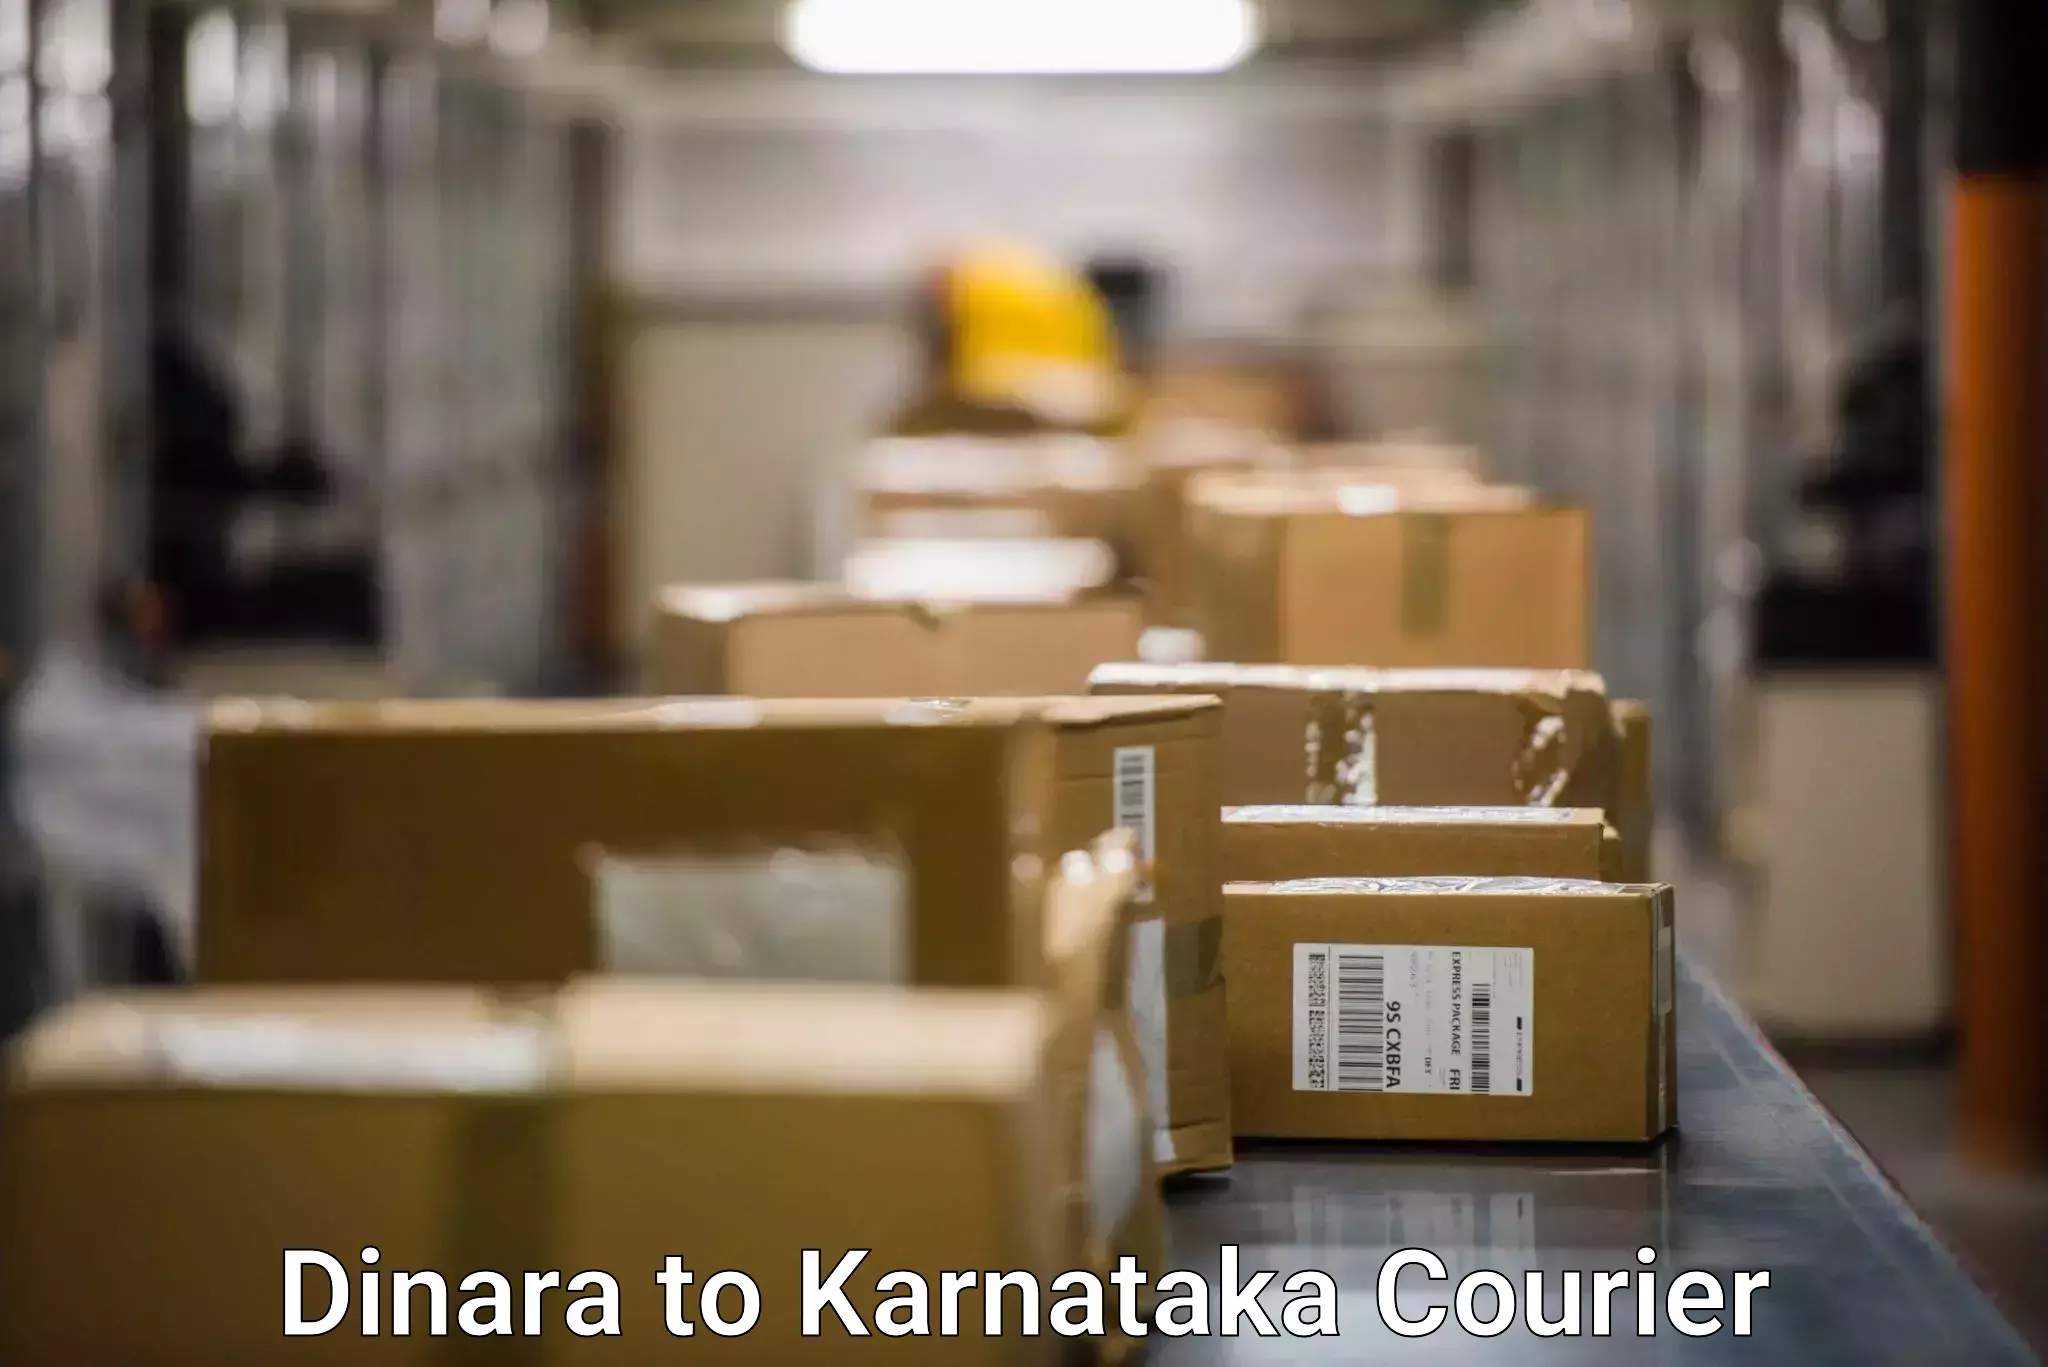 User-friendly delivery service Dinara to Jayanagar